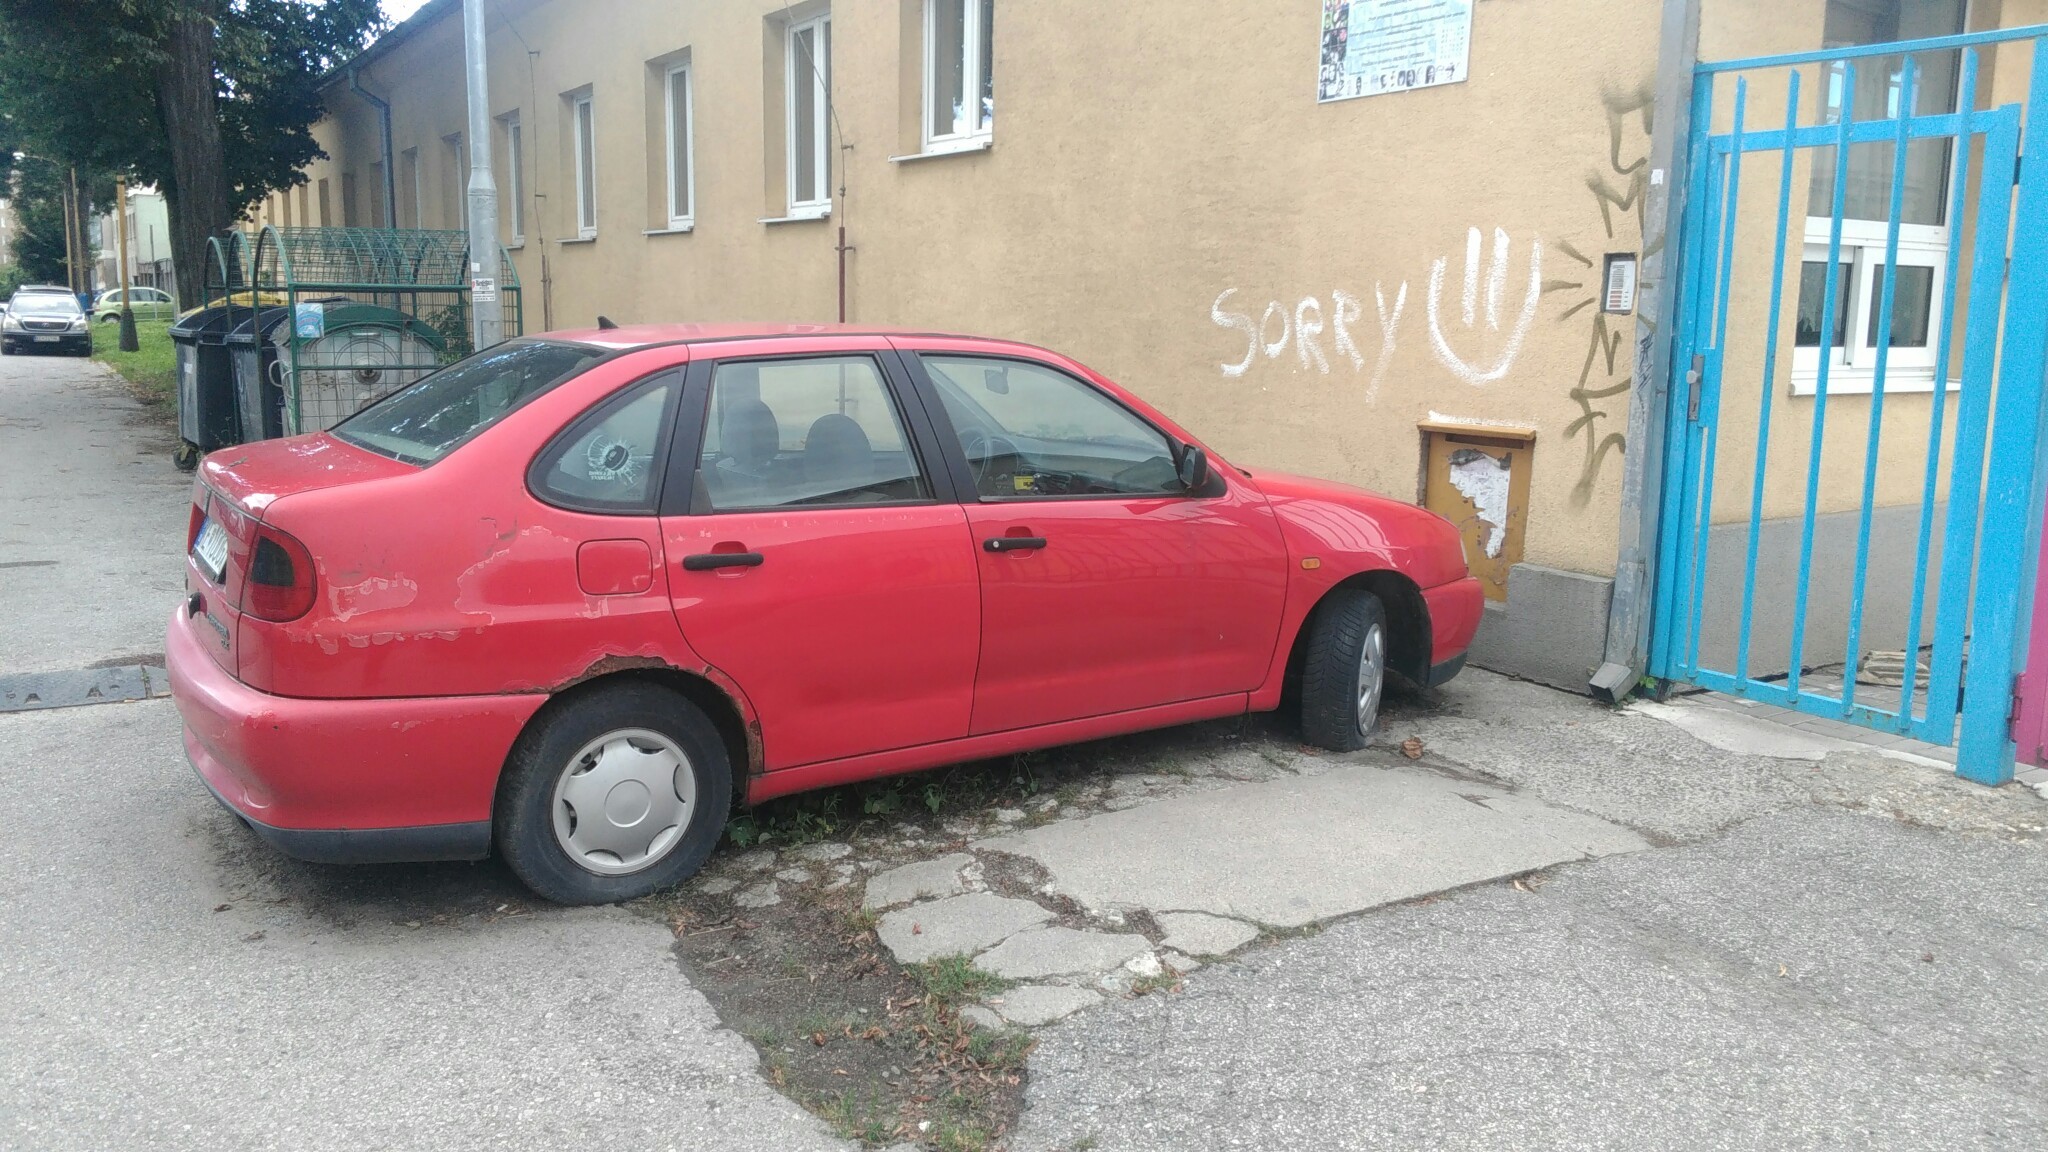 Dlhodobo odstavené nepojazdné auto, Staré mesto, Košice |  Odkazprestarostu.sk